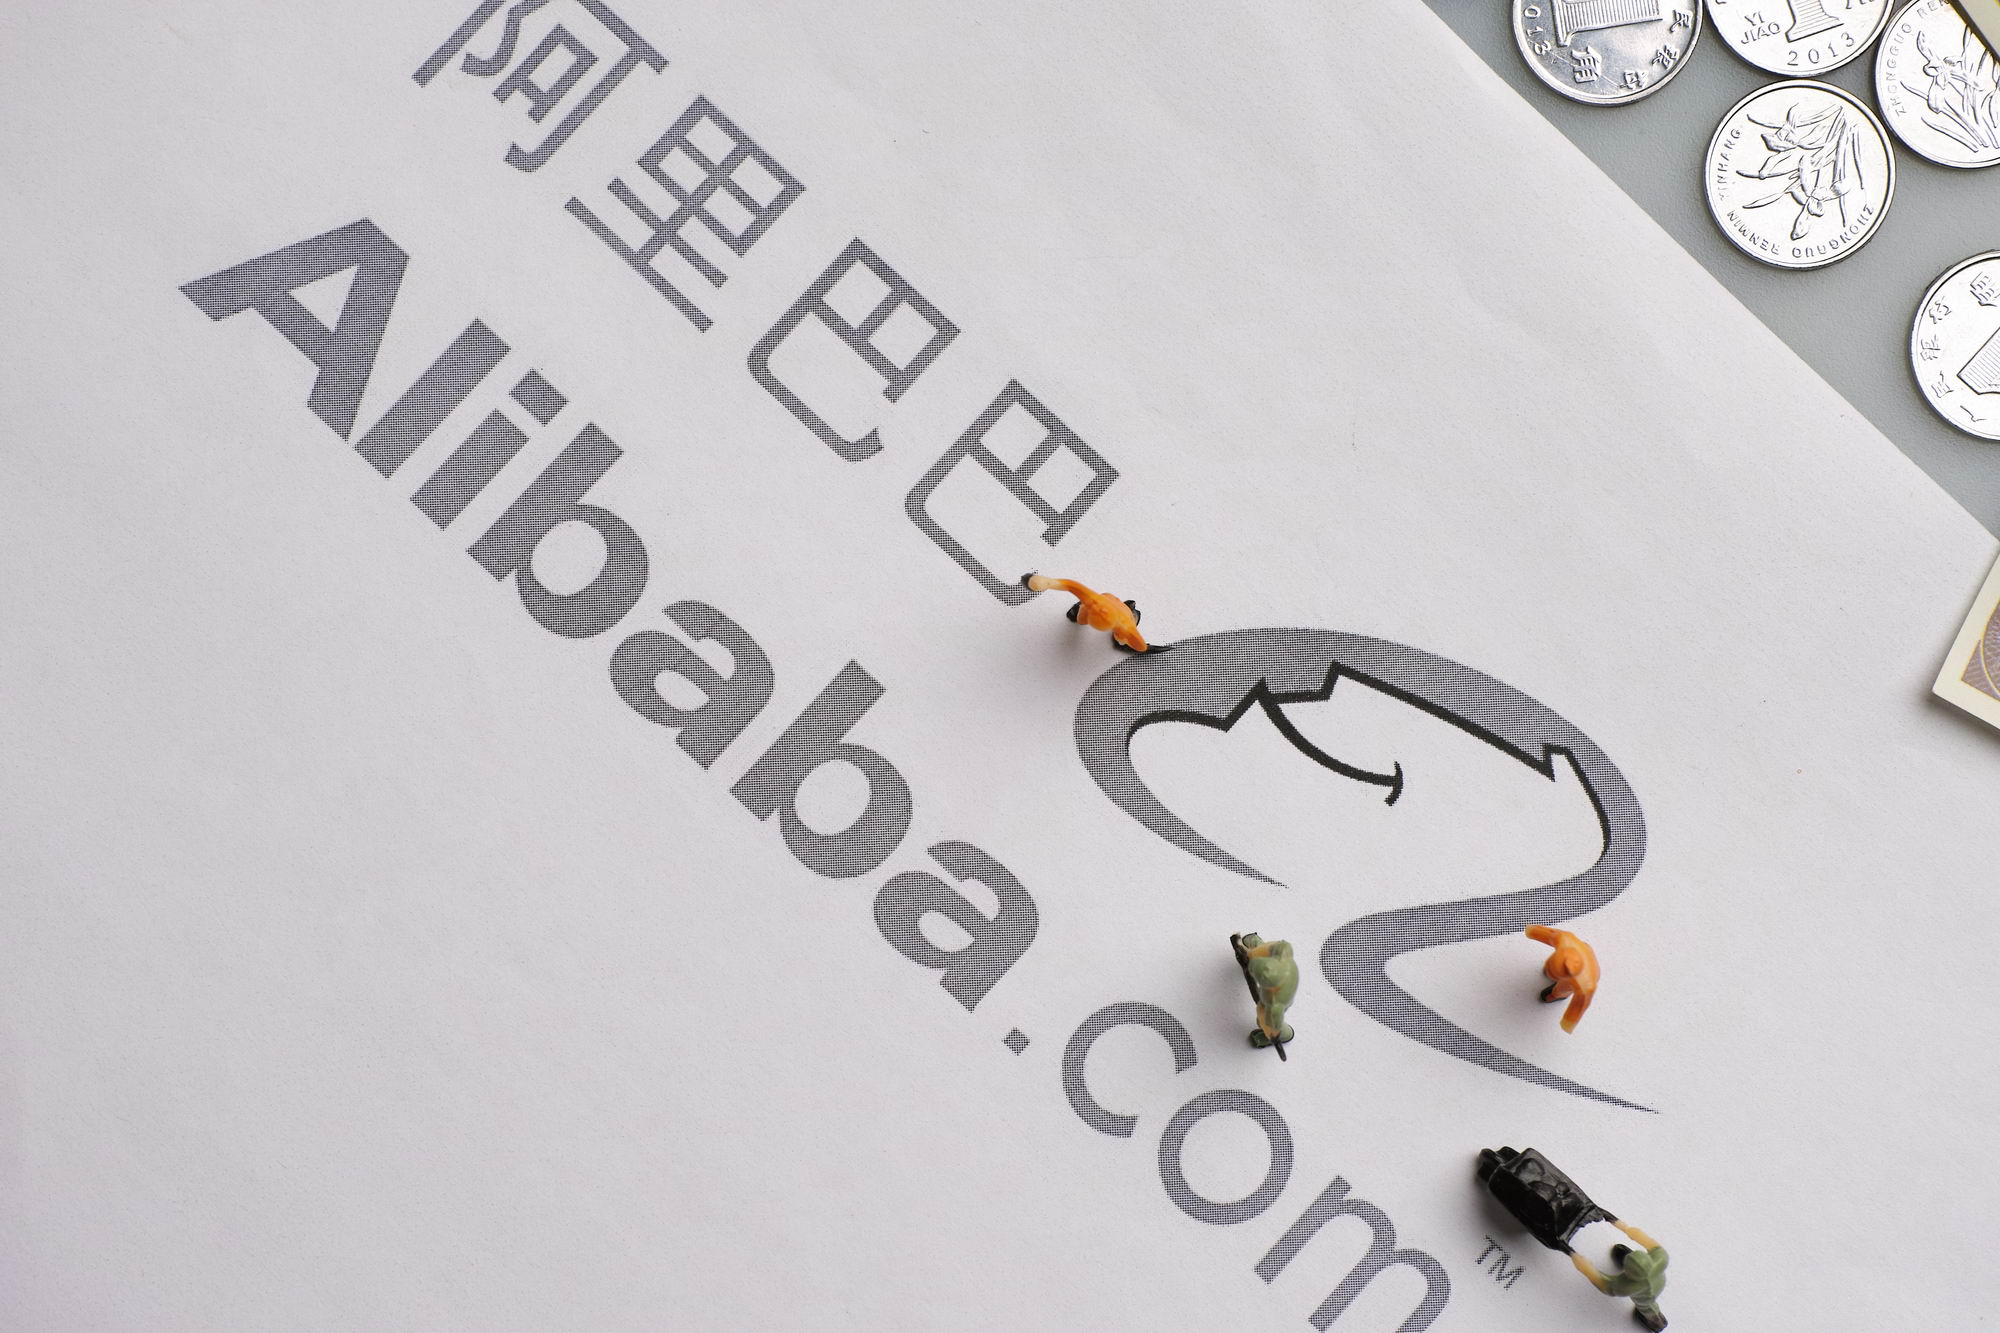 阿里巴巴(北京)智能科技有限公司成立